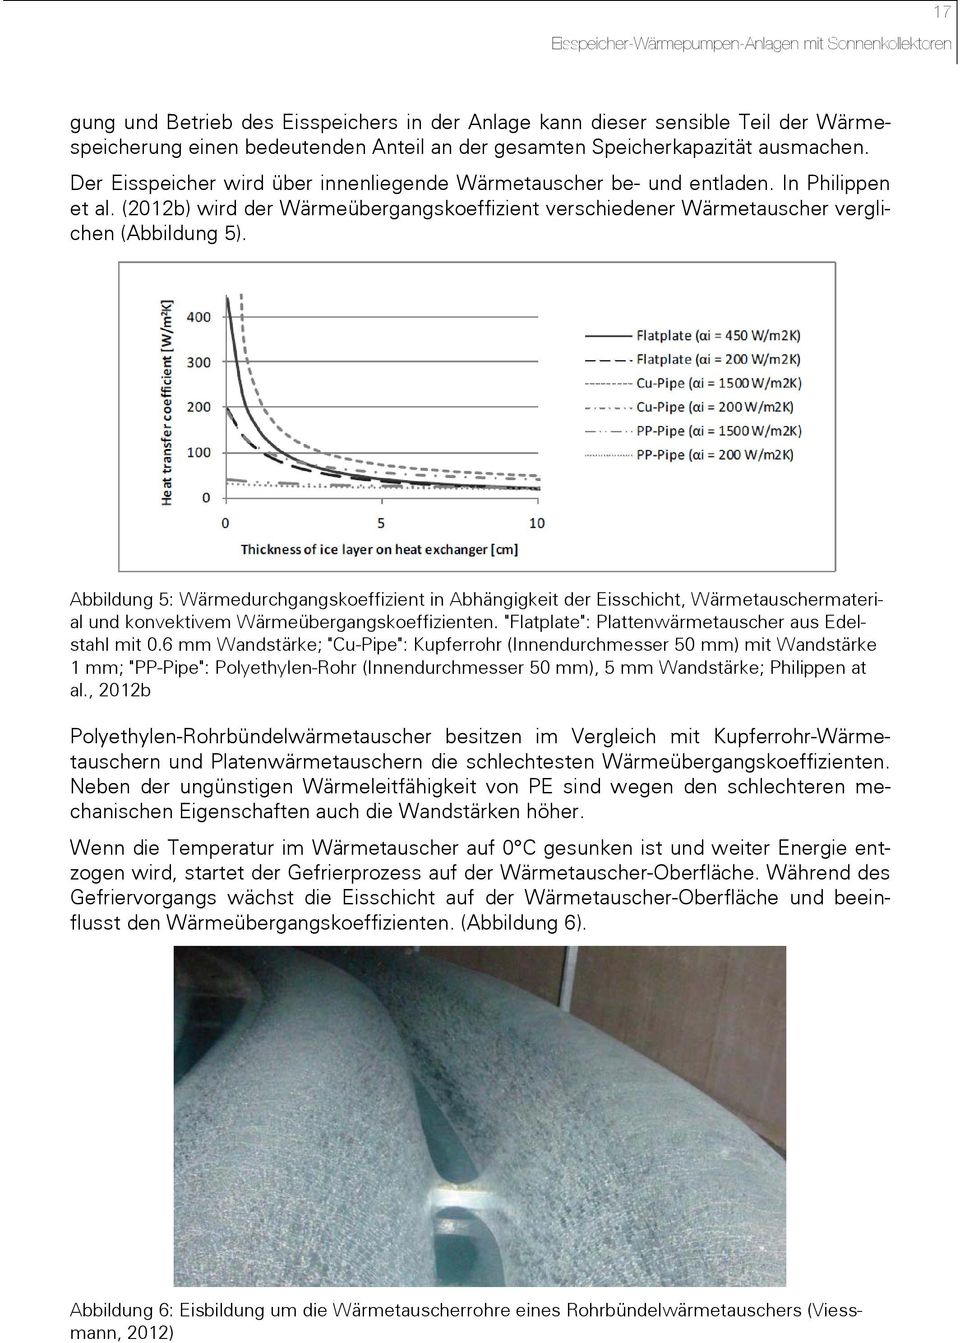 Abbildung 5: Wärmedurchgangskoeffizient in Abhängigkeit der Eisschicht, Wärmetauschermaterial und konvektivem Wärmeübergangskoeffizienten. "Flatplate": Plattenwärmetauscher aus Edelstahl mit 0.